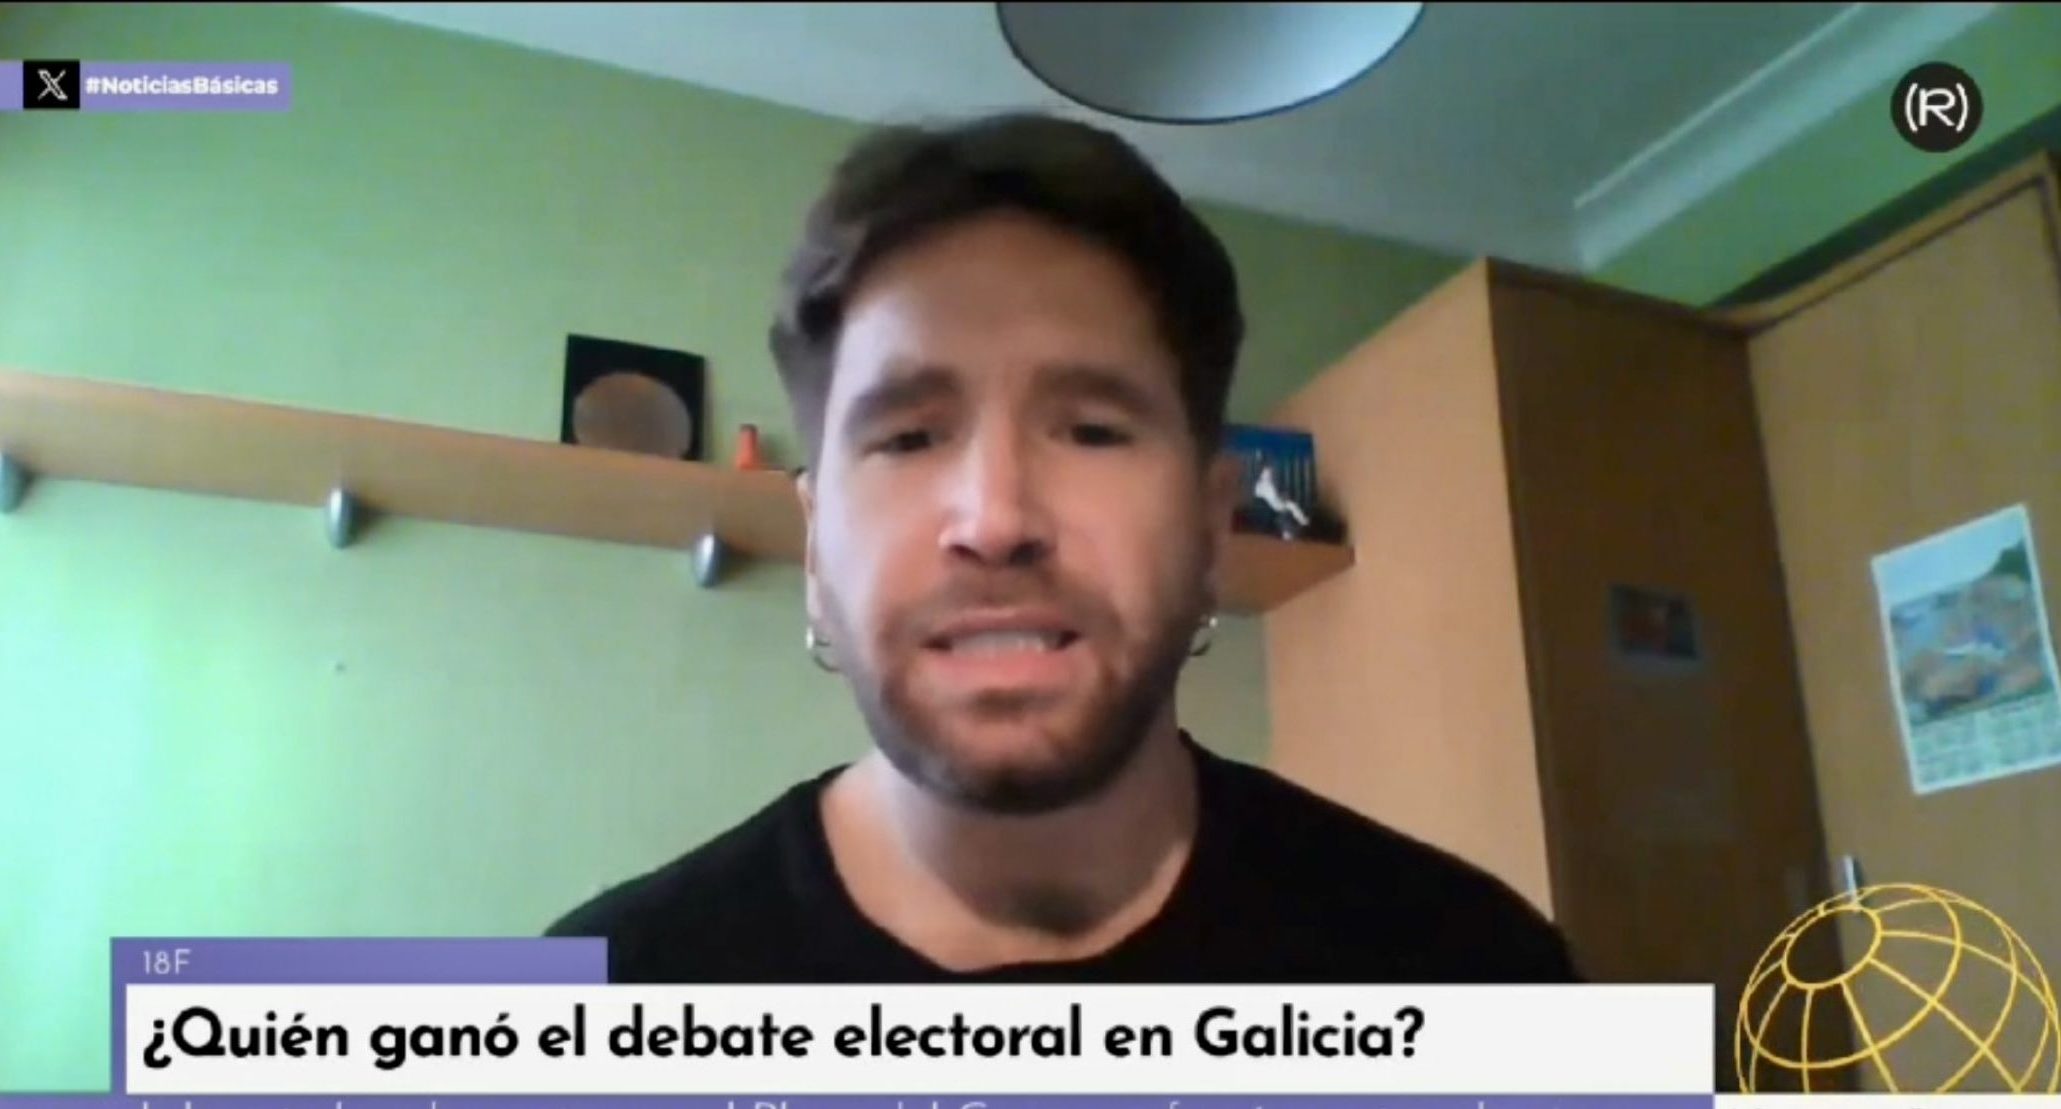 El politólogo Adrián Seijas valora el debate electoral de Galicia en Noticias Básicas